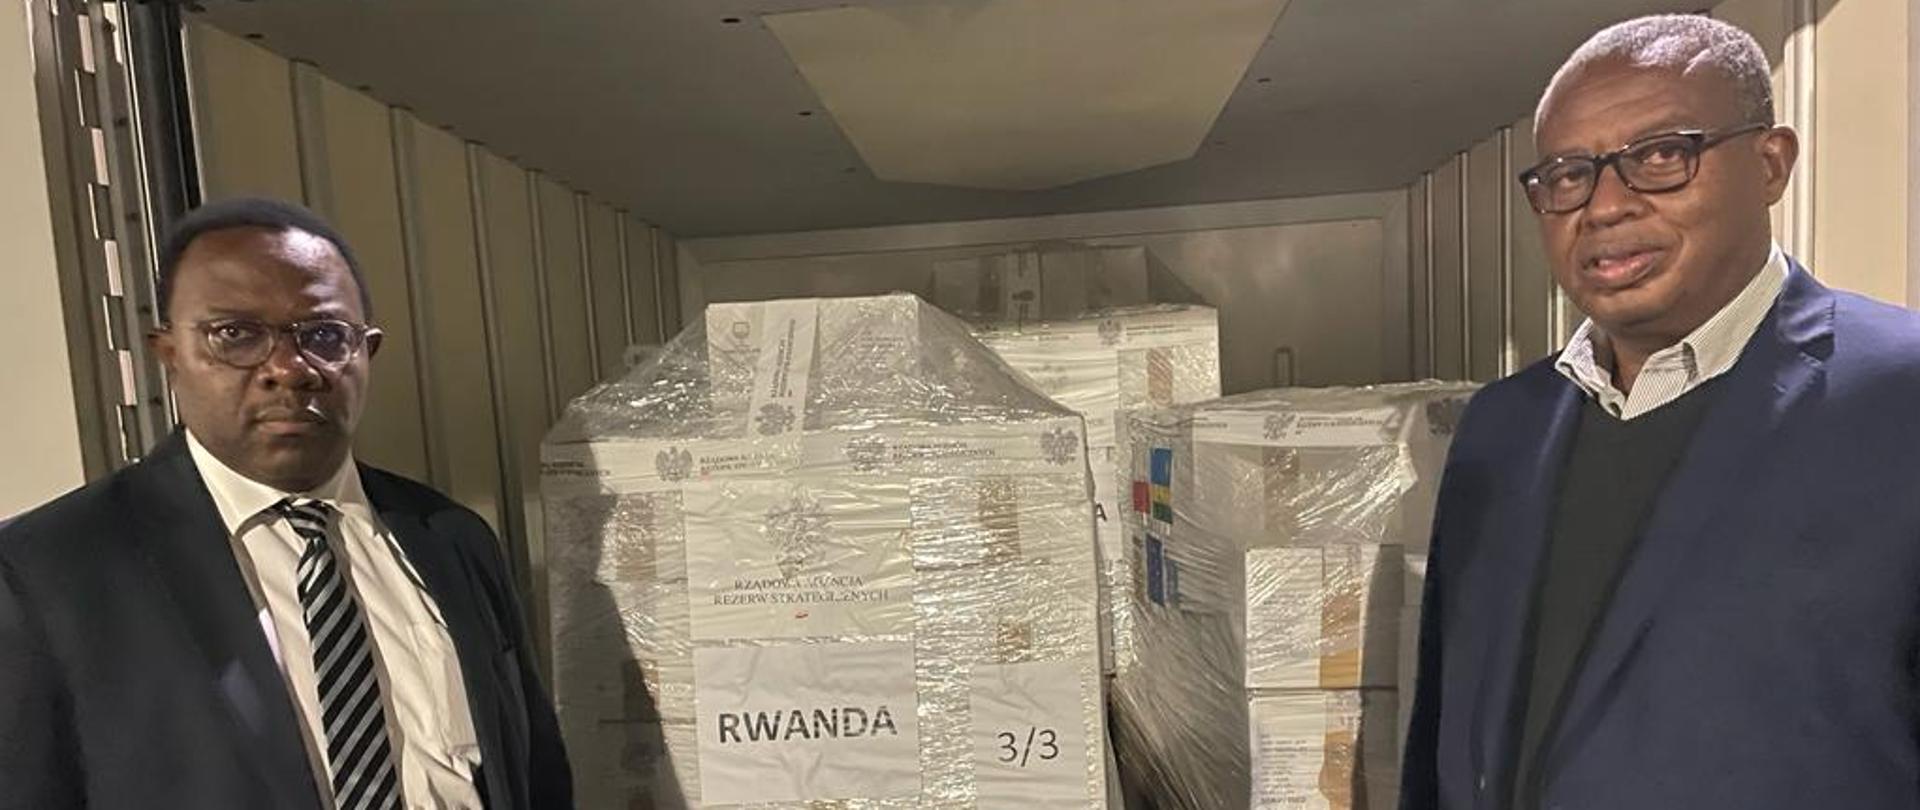 Rwanda_szczepionki z Polski_21.11.2021